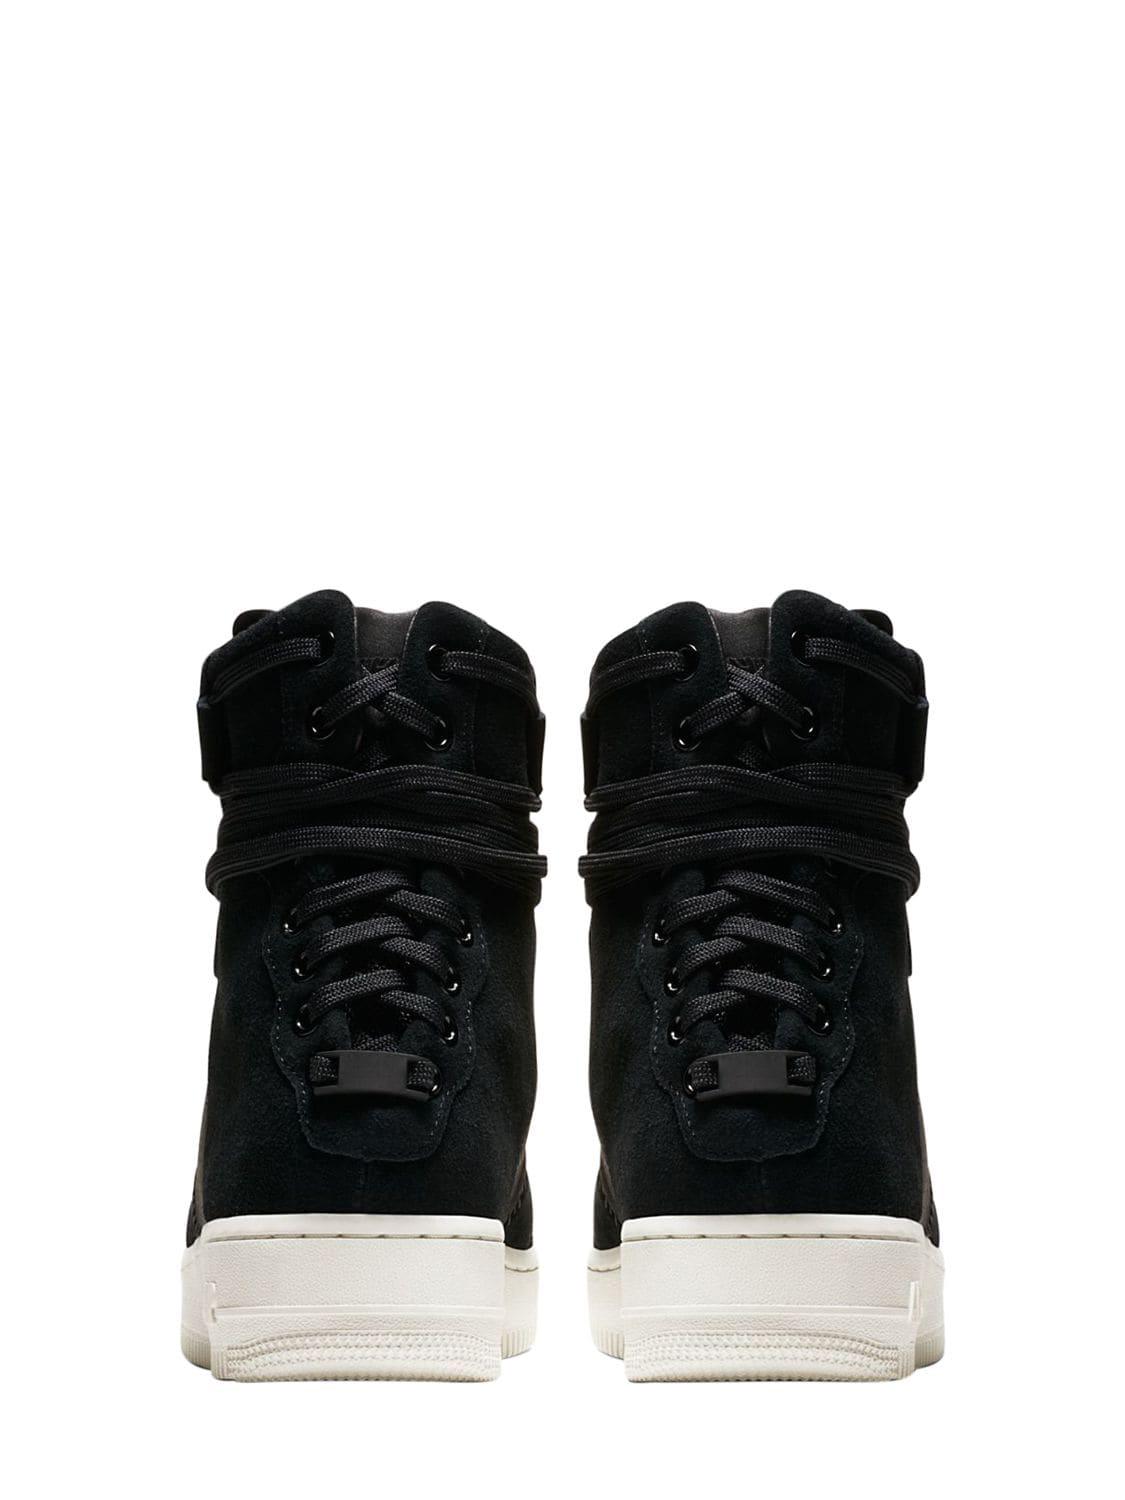 Nike Leather Af1 Rebel Xx Prm Sneakers in Black | Lyst